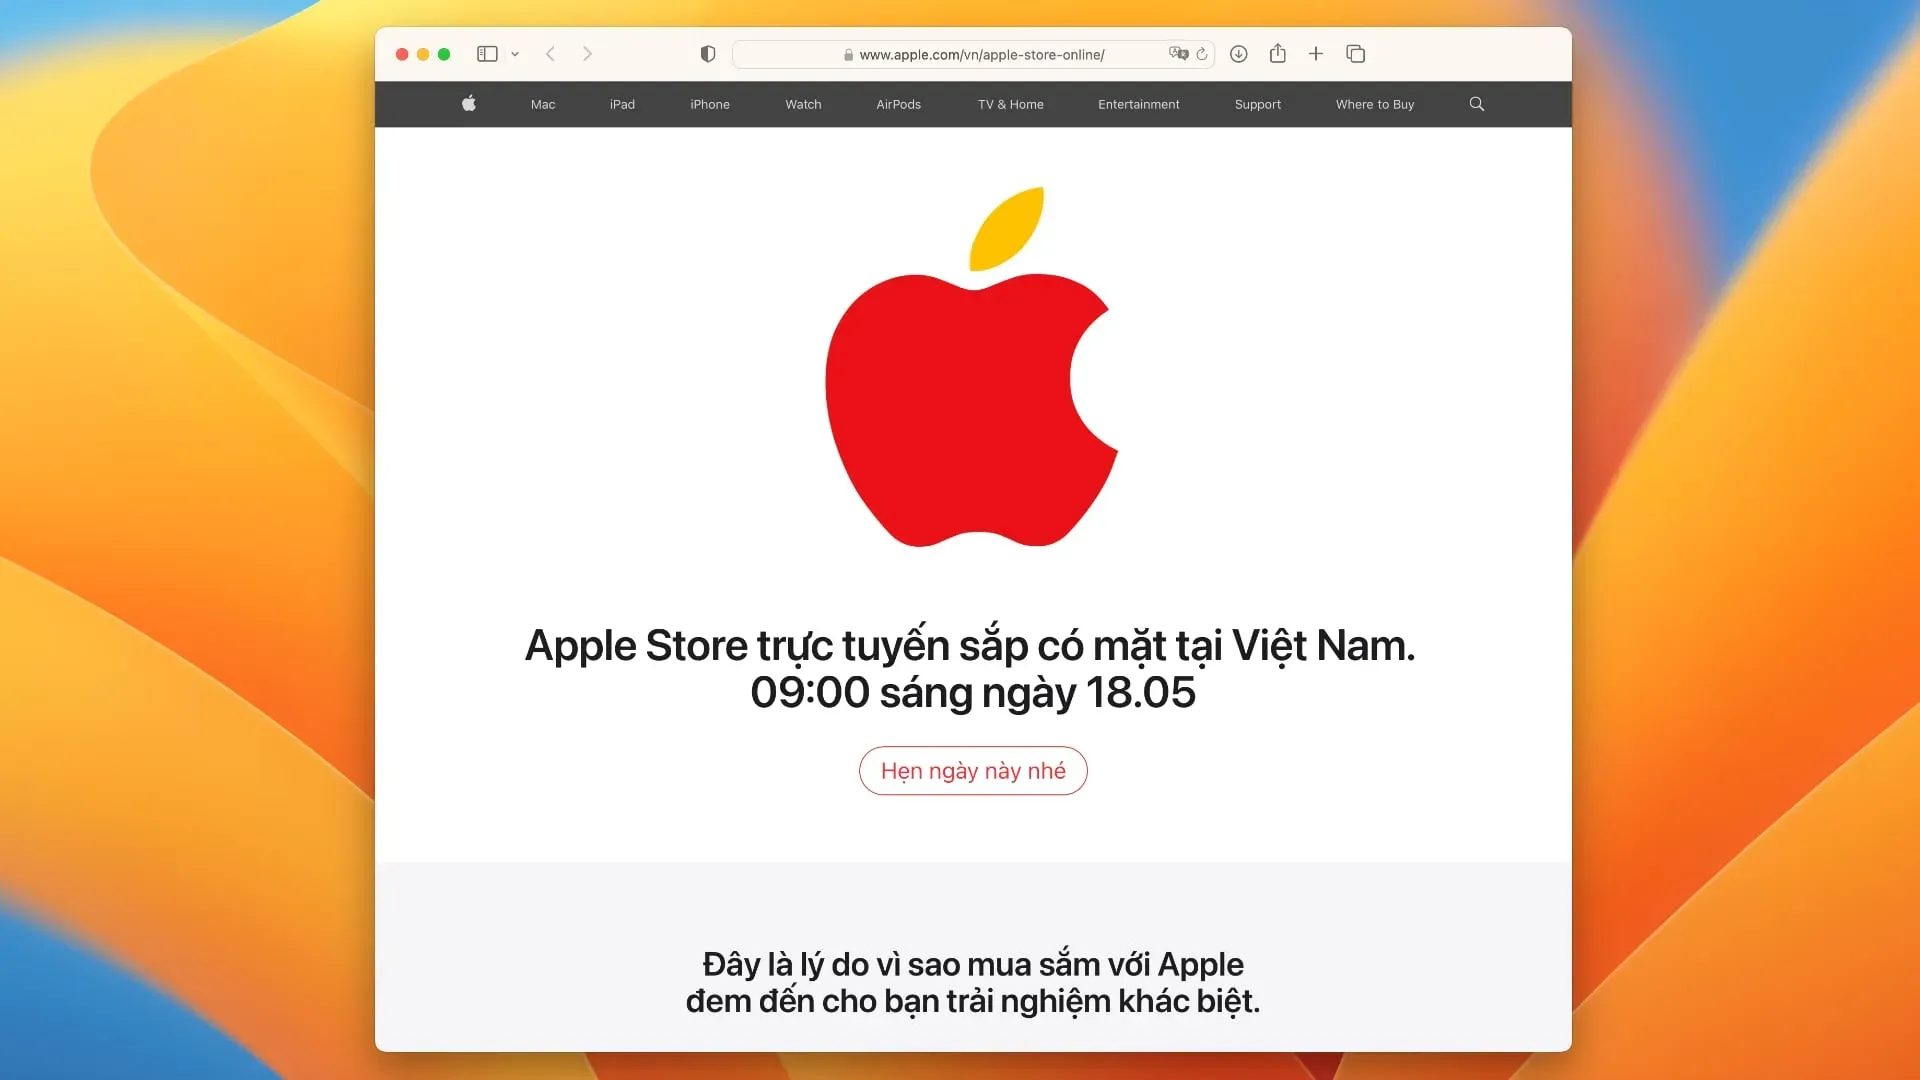 Apples Vorschauseite zur Ankündigung des Online-Shops in Vietnam